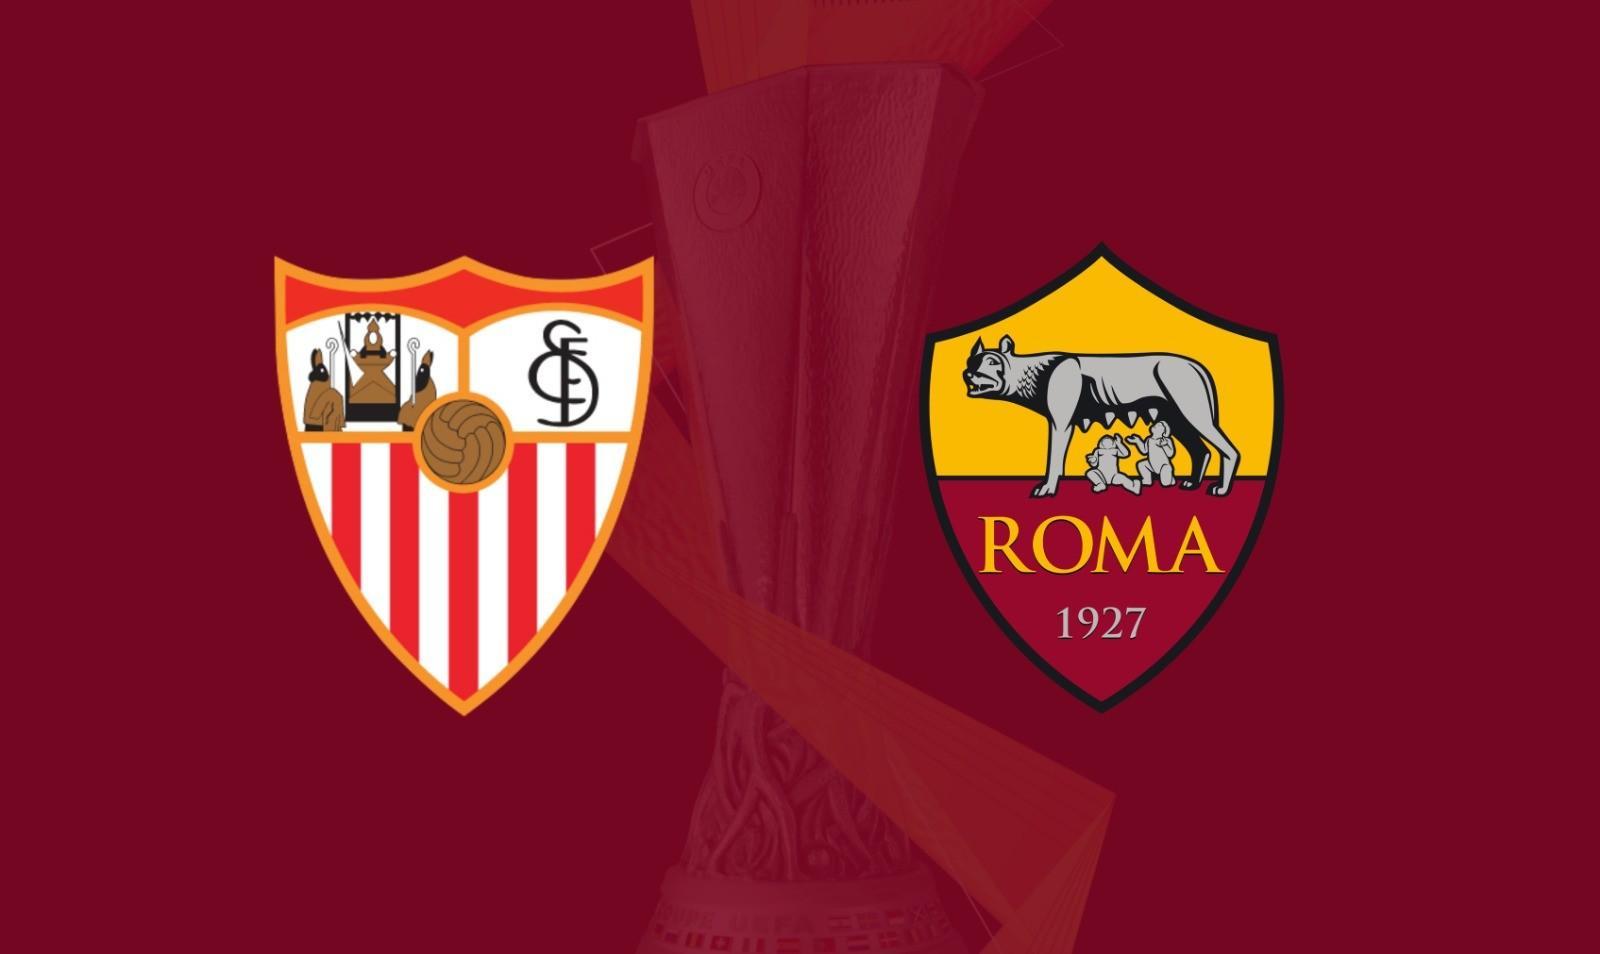 UFFICIALE - Europa League: Siviglia-Roma non si gioca